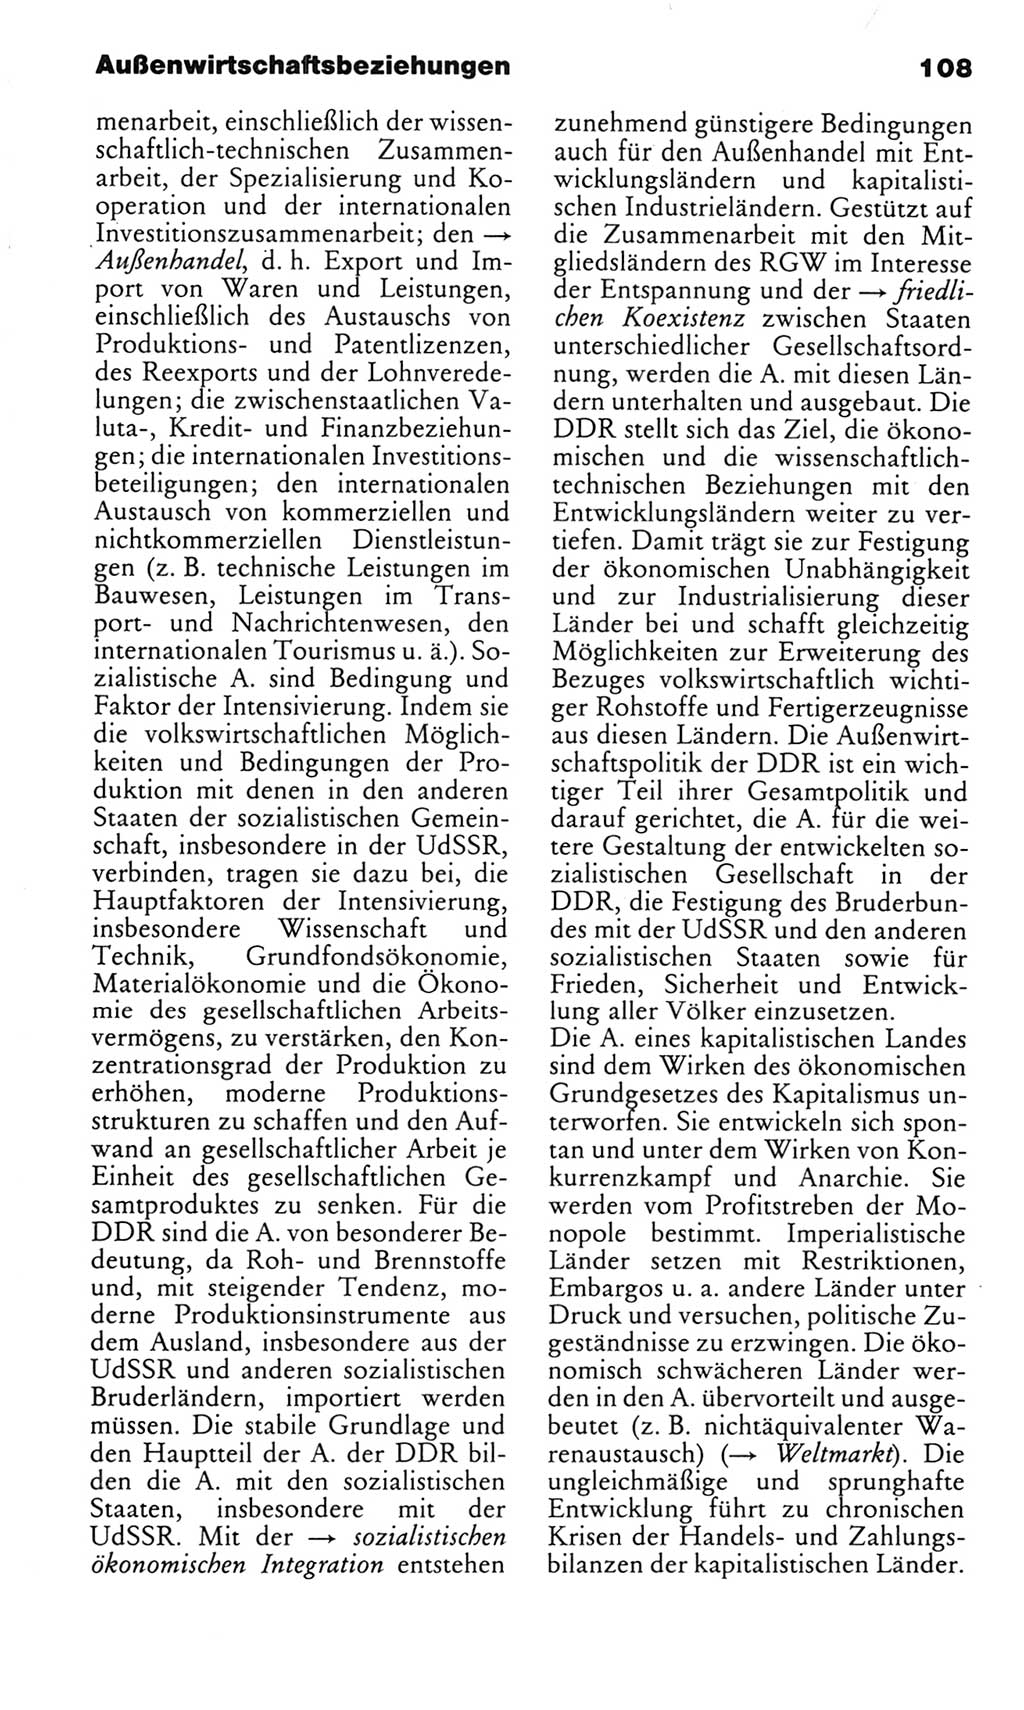 Kleines politisches Wörterbuch [Deutsche Demokratische Republik (DDR)] 1983, Seite 108 (Kl. pol. Wb. DDR 1983, S. 108)